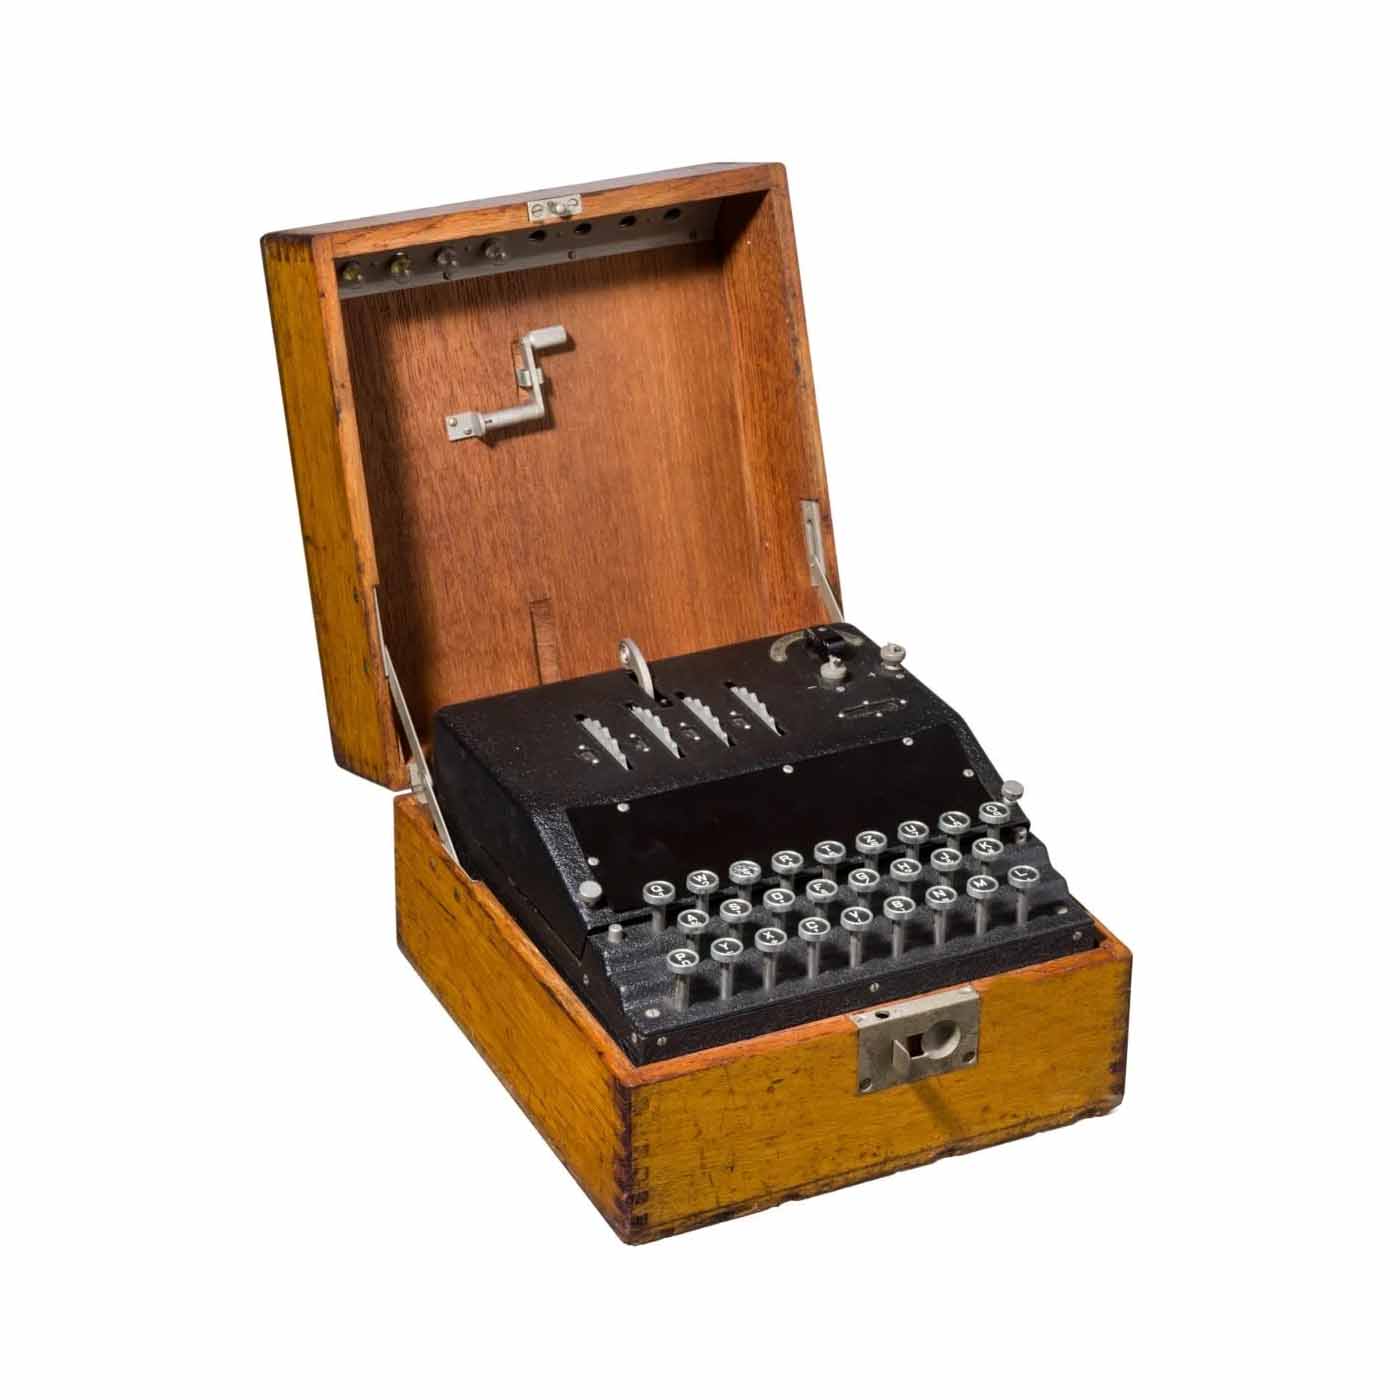 German World War II Enigma G coding machine tops $700K at Hermann Historica